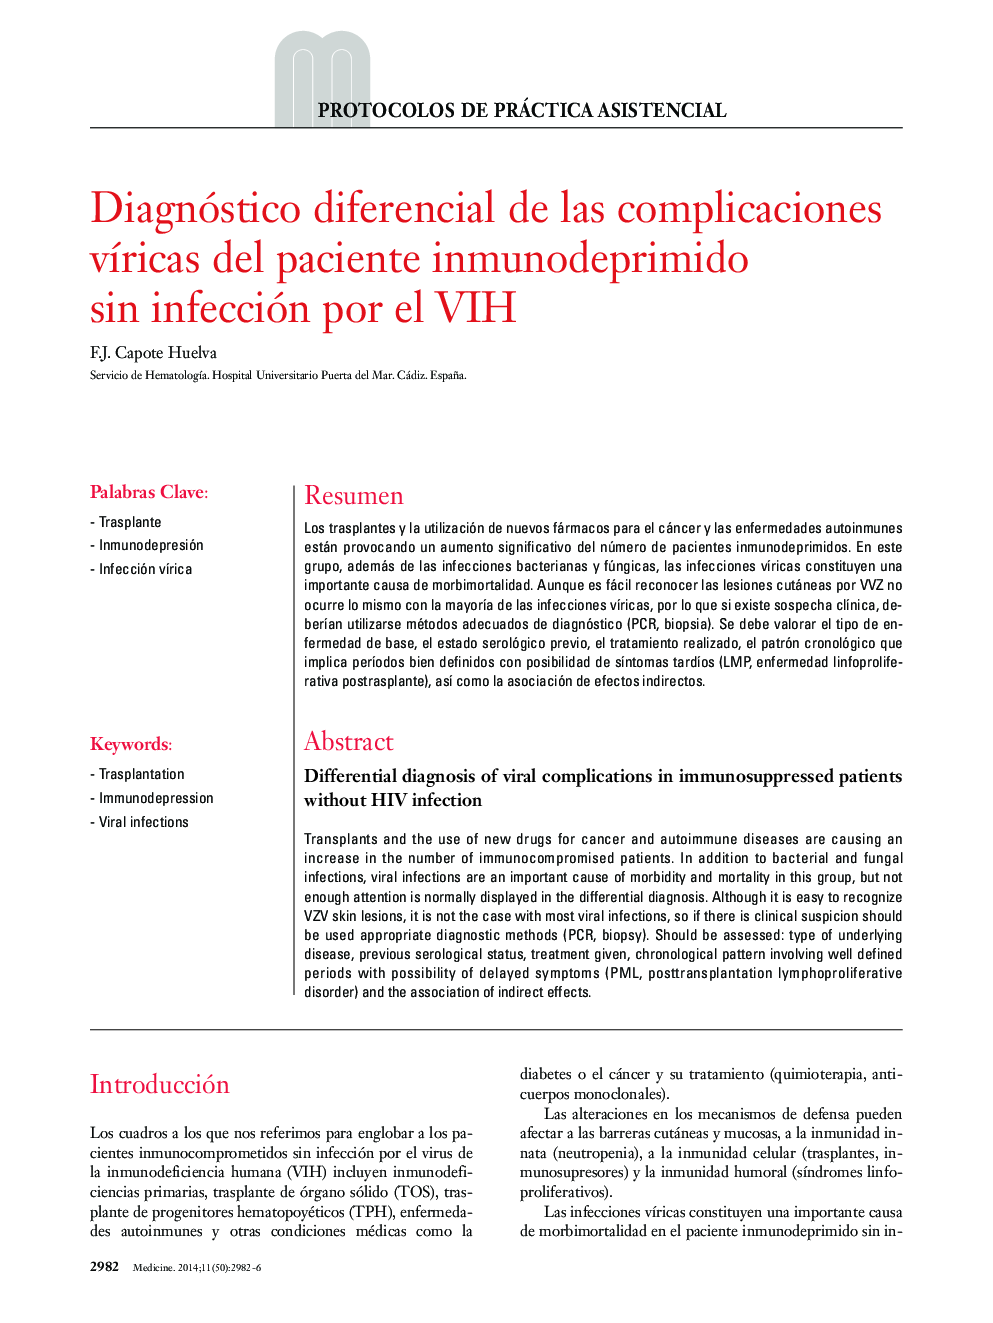 Diagnóstico diferencial de las complicaciones víricas del paciente inmunodeprimido sin infección por el VIH